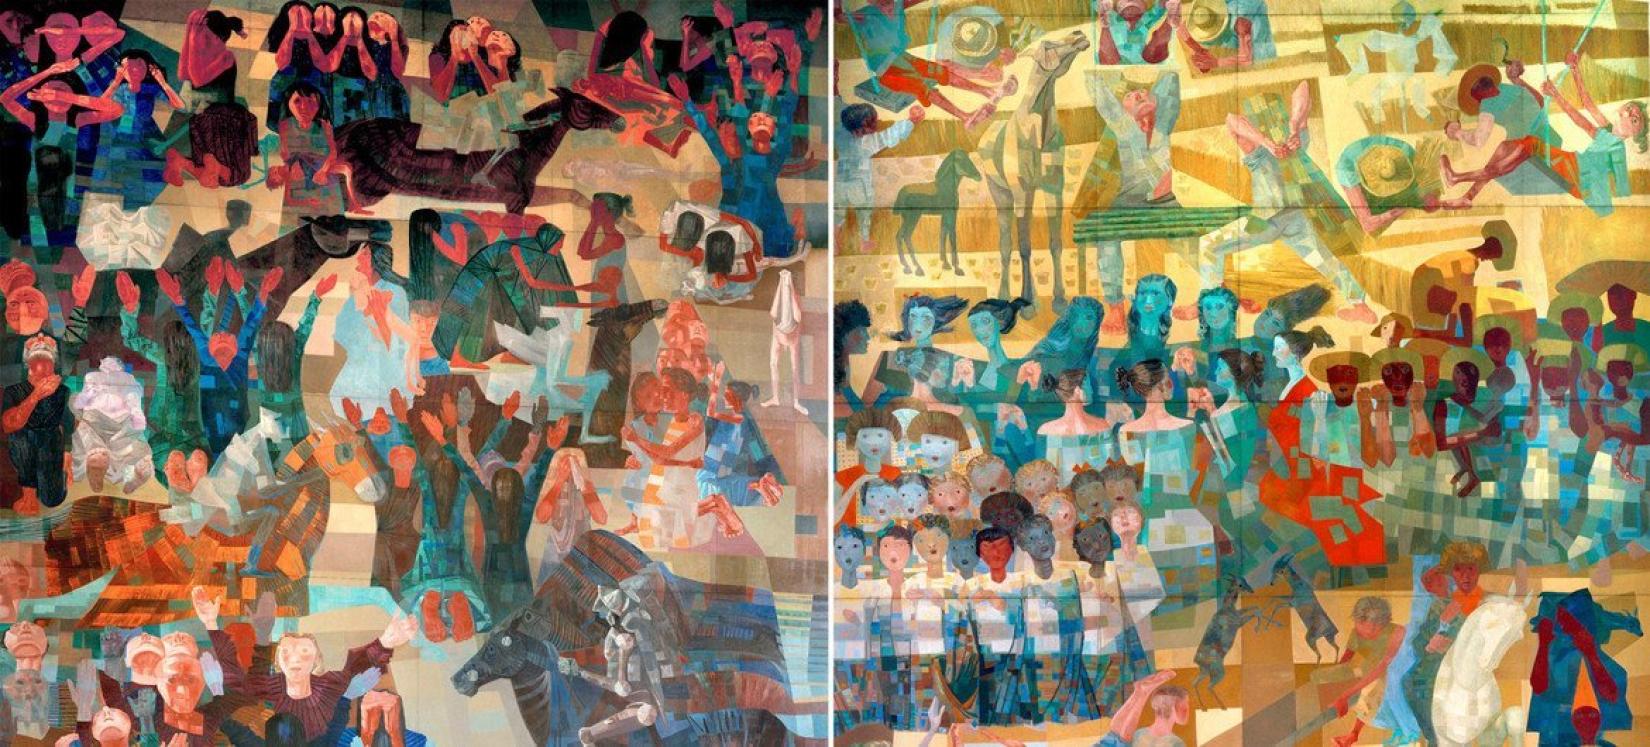 Este 2022 marca 65 anos após a inauguração, nas Nações Unidas, dos painéis “Guerra e Paz” do pintor brasileiro Candido Portinari.